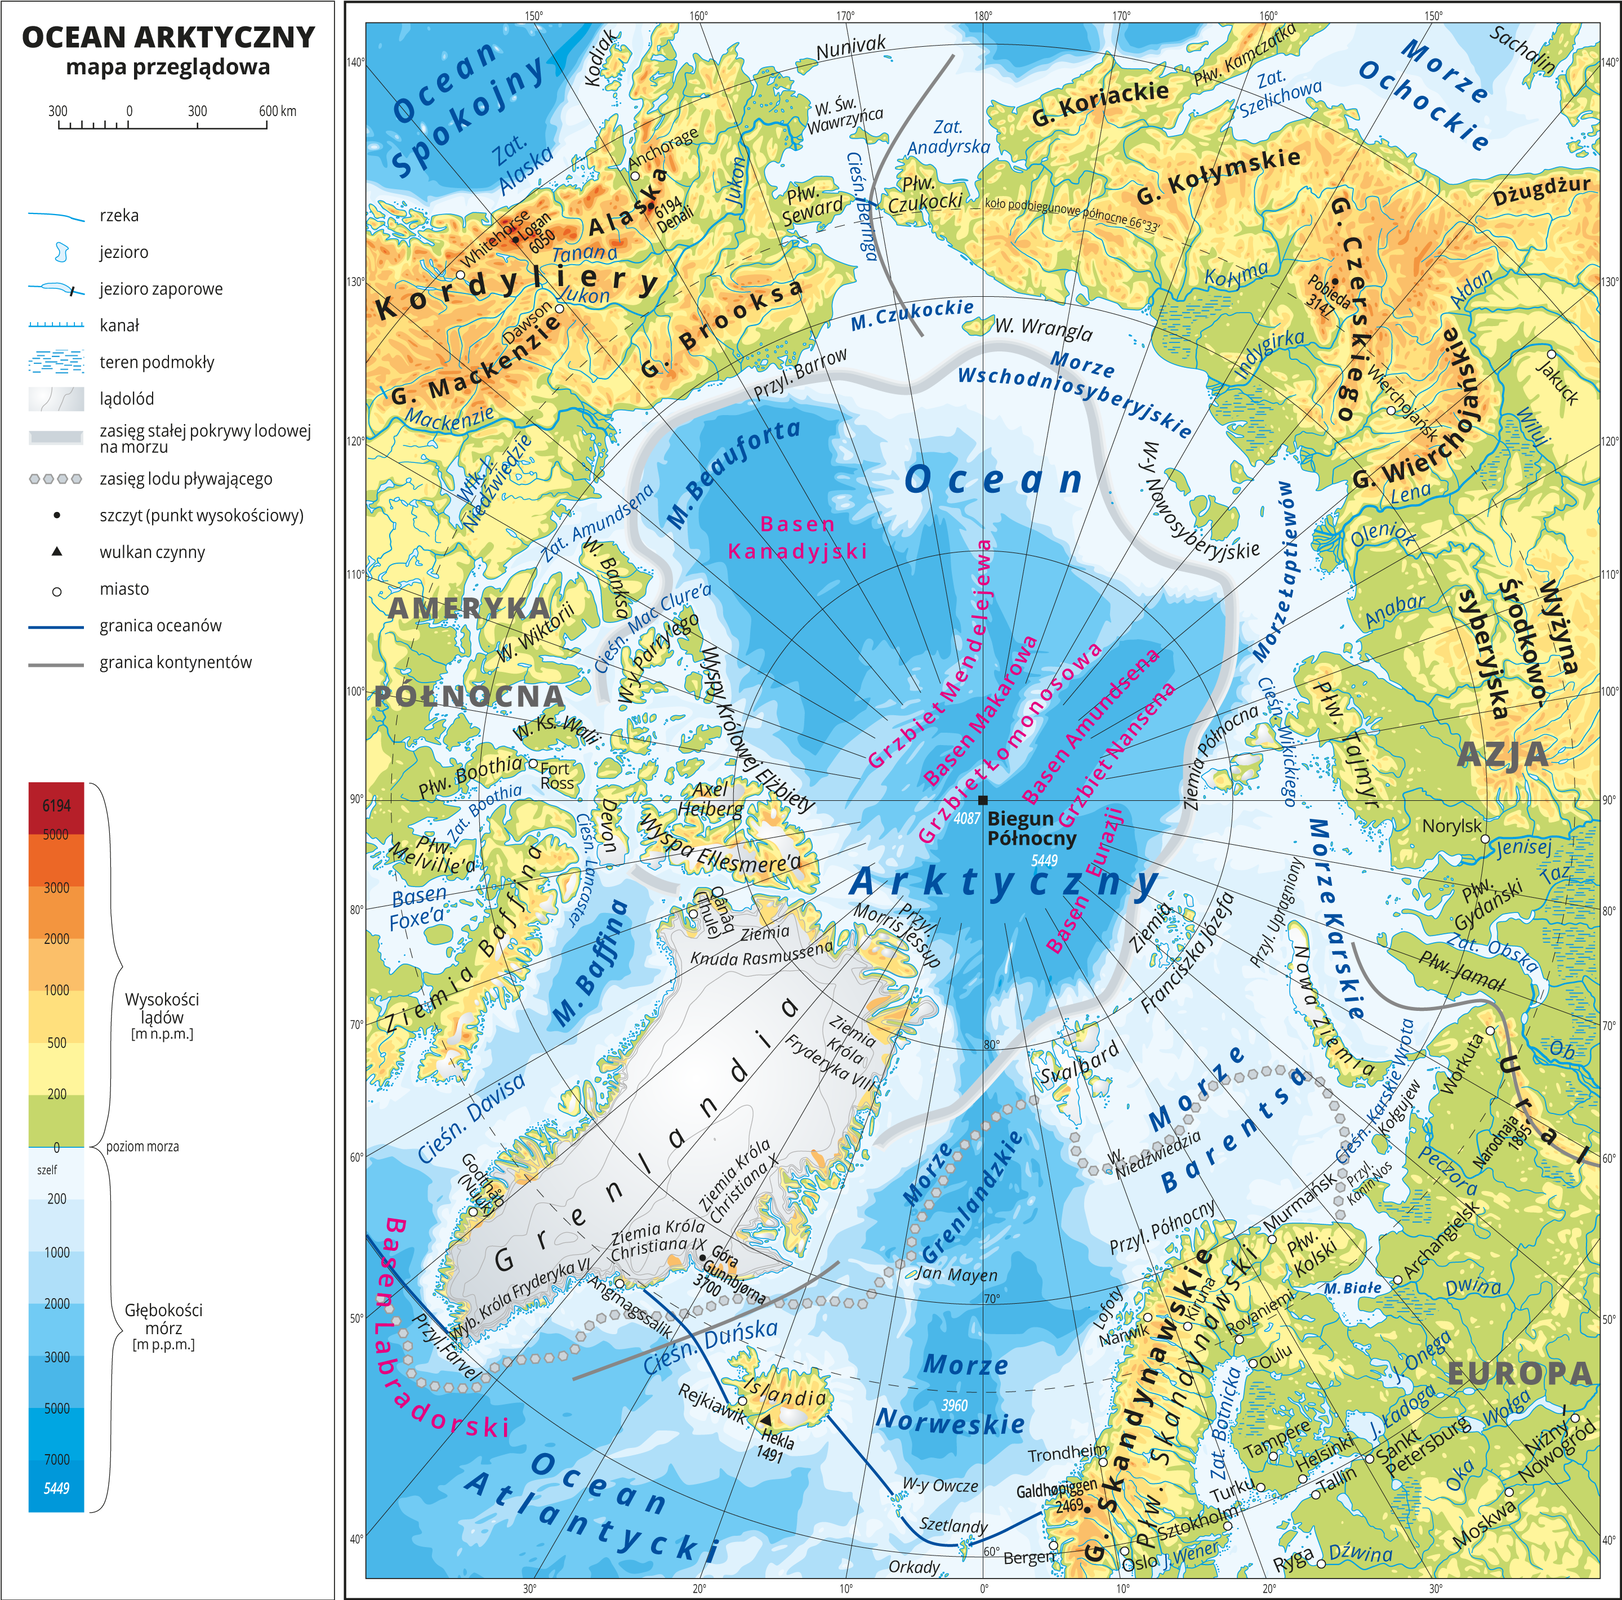 Ilustracja przedstawia mapę Oceanu Arktycznego. W obrębie lądów występują obszary w kolorze zielonym, żółtym, pomarańczowym i czerwonym. Morza zaznaczono sześcioma odcieniami koloru niebieskiego i opisano głębokości. Ciemniejszy kolor oznacza większą głębokość. W obrębie wód przeprowadzono granice między oceanami. Na mapie opisano nazwy kontynentów, wysp, głównych pasm górskich, morza i zatoki. Oznaczono i opisano największe miasta. Mapa pokryta jest równoleżnikami i południkami. Dookoła mapy w białej ramce opisano współrzędne geograficzne co dwadzieścia stopni. W legendzie umieszczono i opisano znaki użyte na mapie.